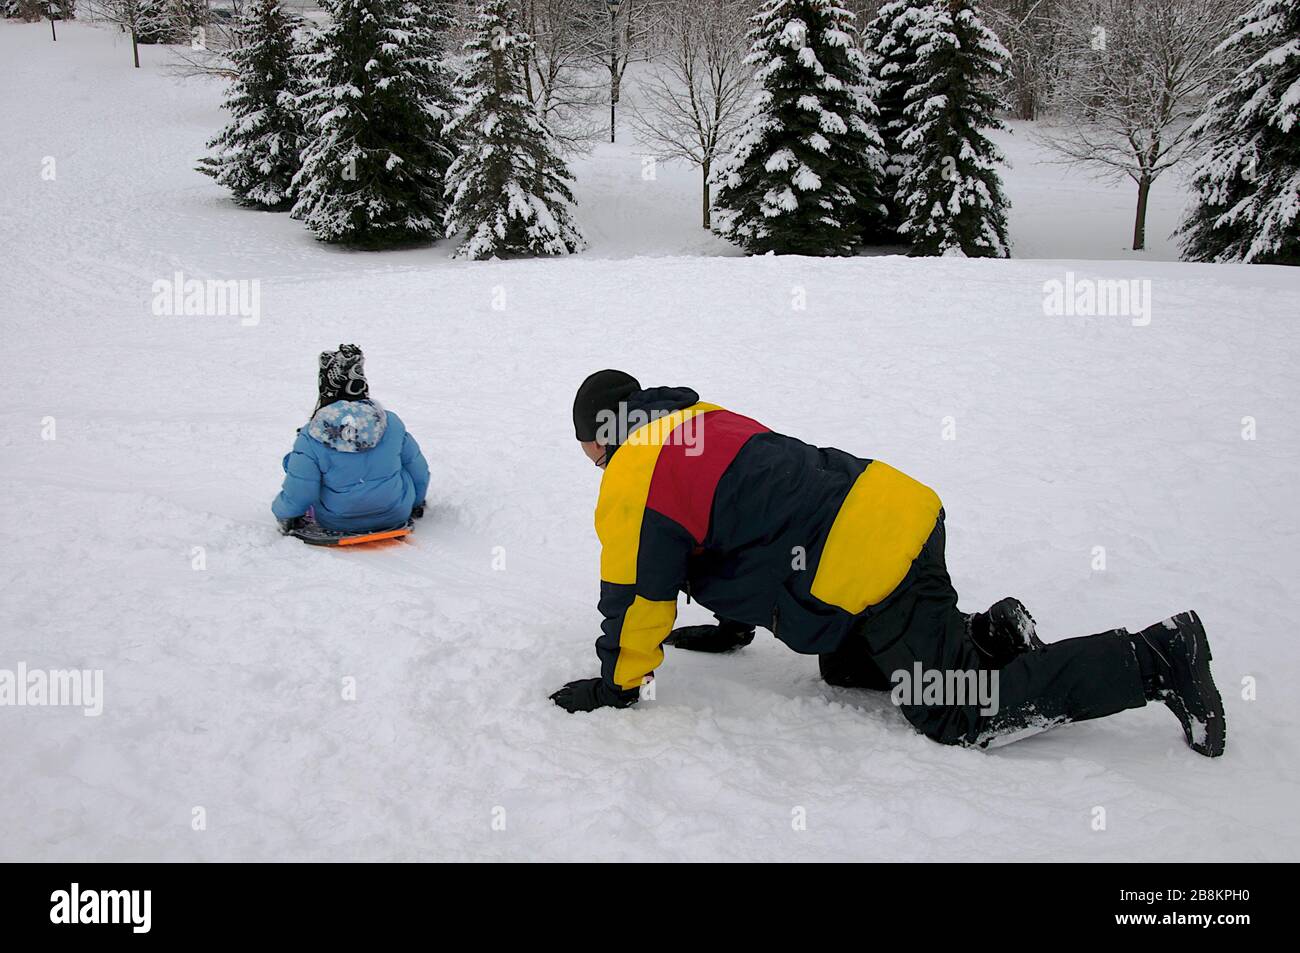 Wintersport-Rodeln - reifer Gesundheitsvater und Sohn spielen Rodeln, Winter, draußen, gesunder Lebensstil. Stockfoto